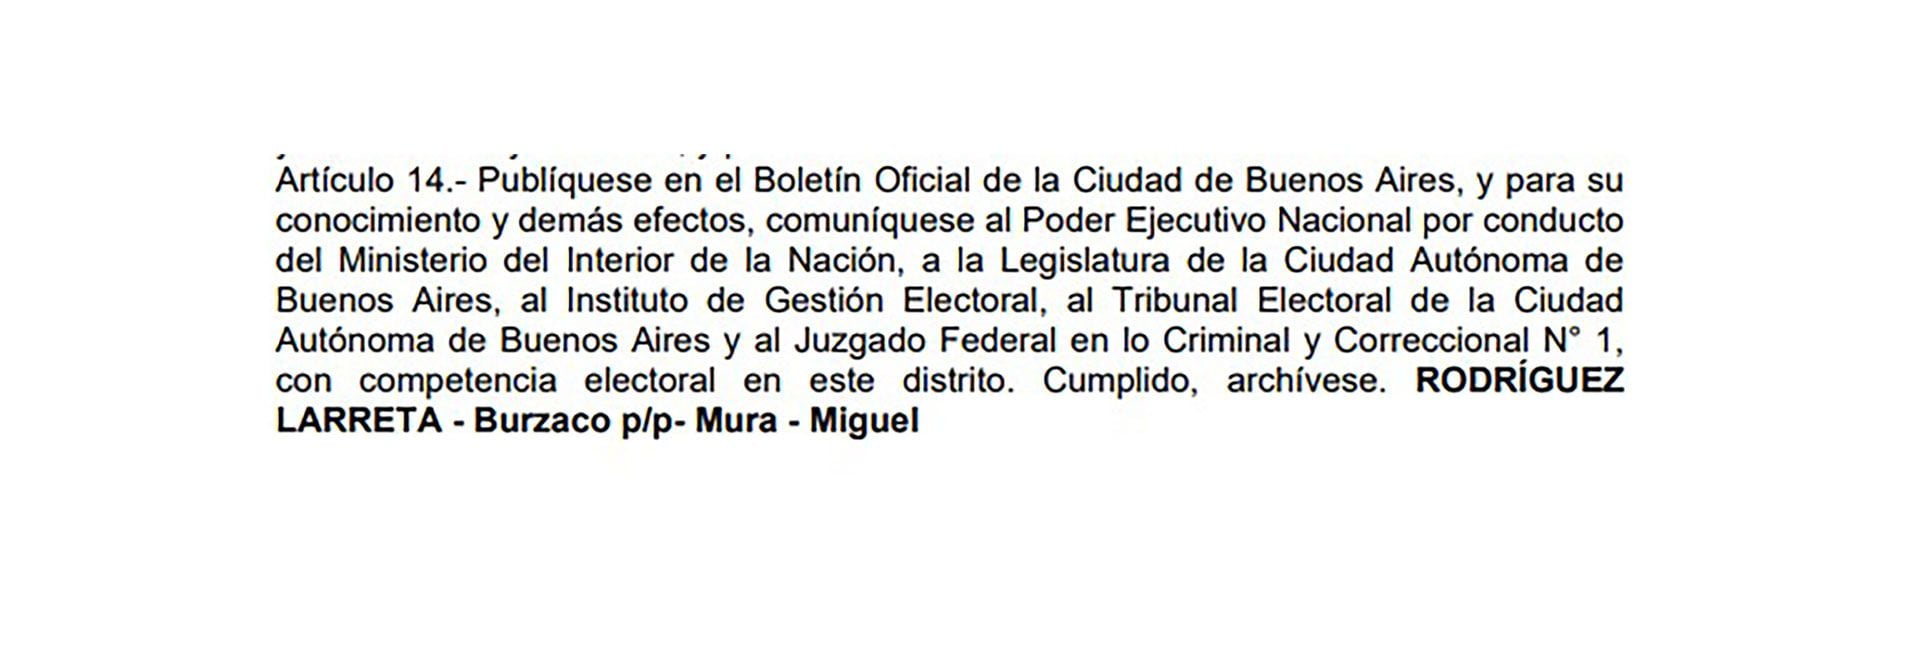 Rodríguez Larreta, Burzaco, Mura, Miguel, las firmas del decreto que convocó a elecciones concurrentes en CABA